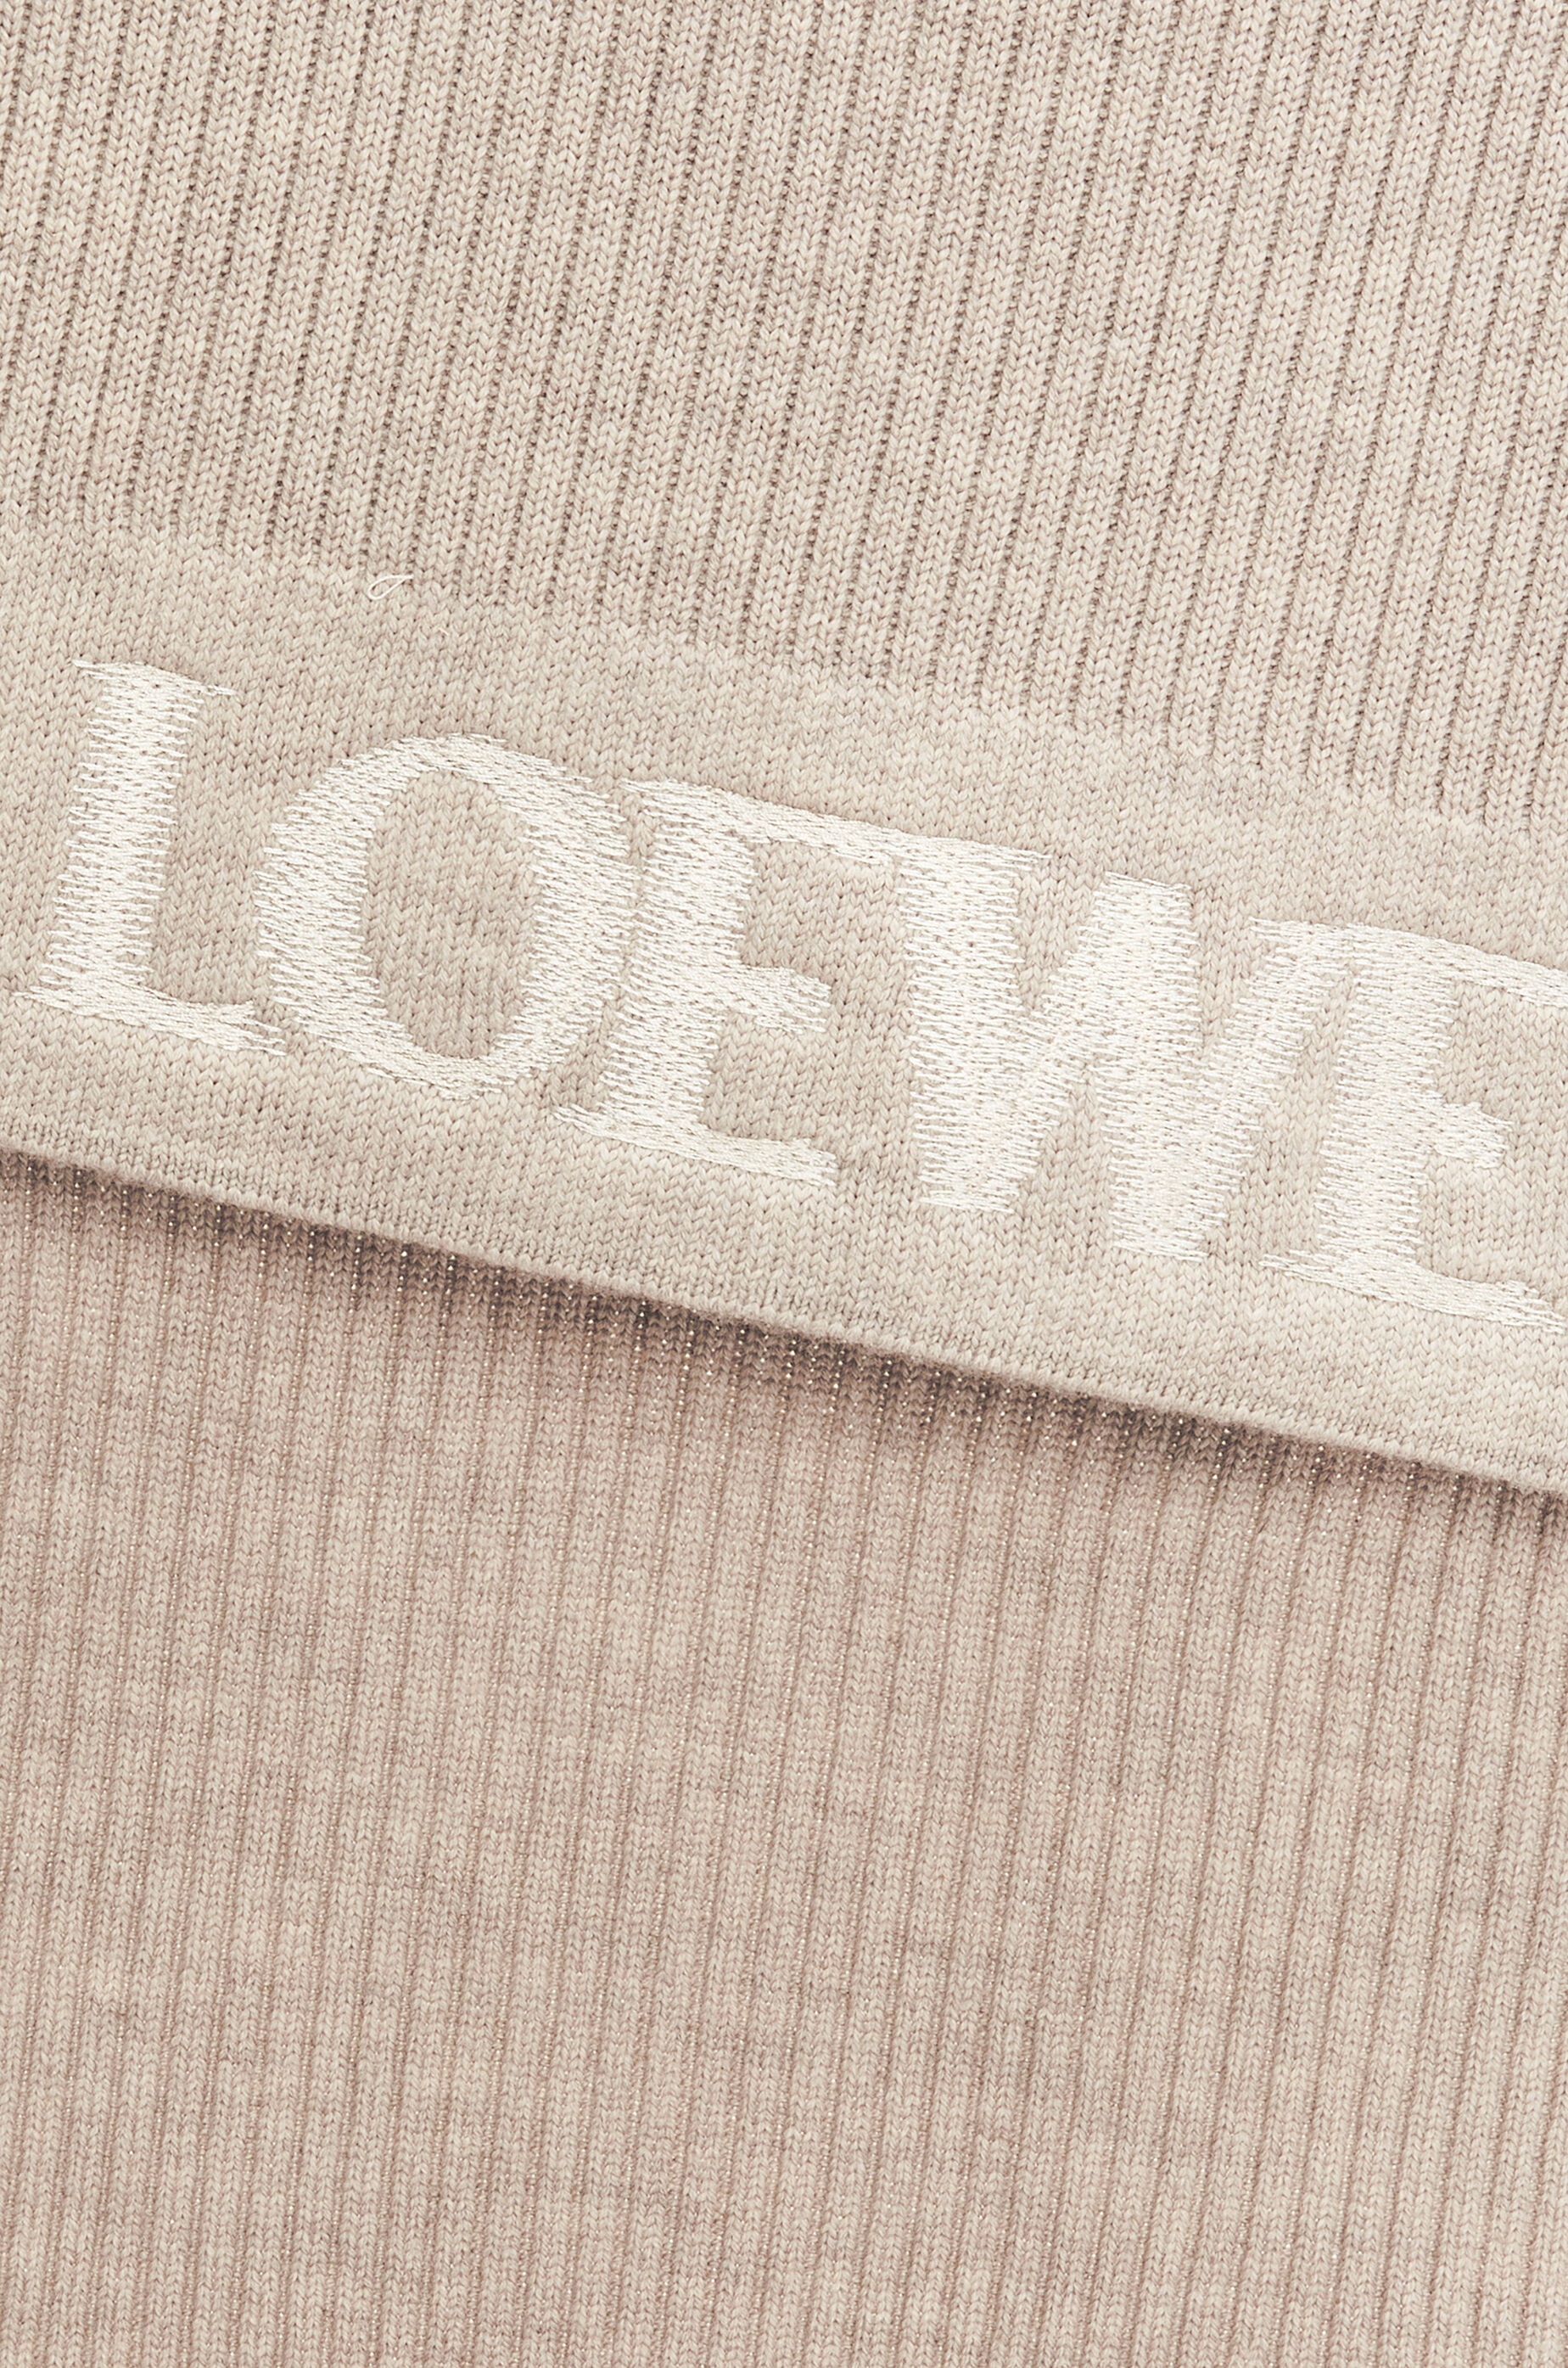 LOEWE scarf in wool - 3